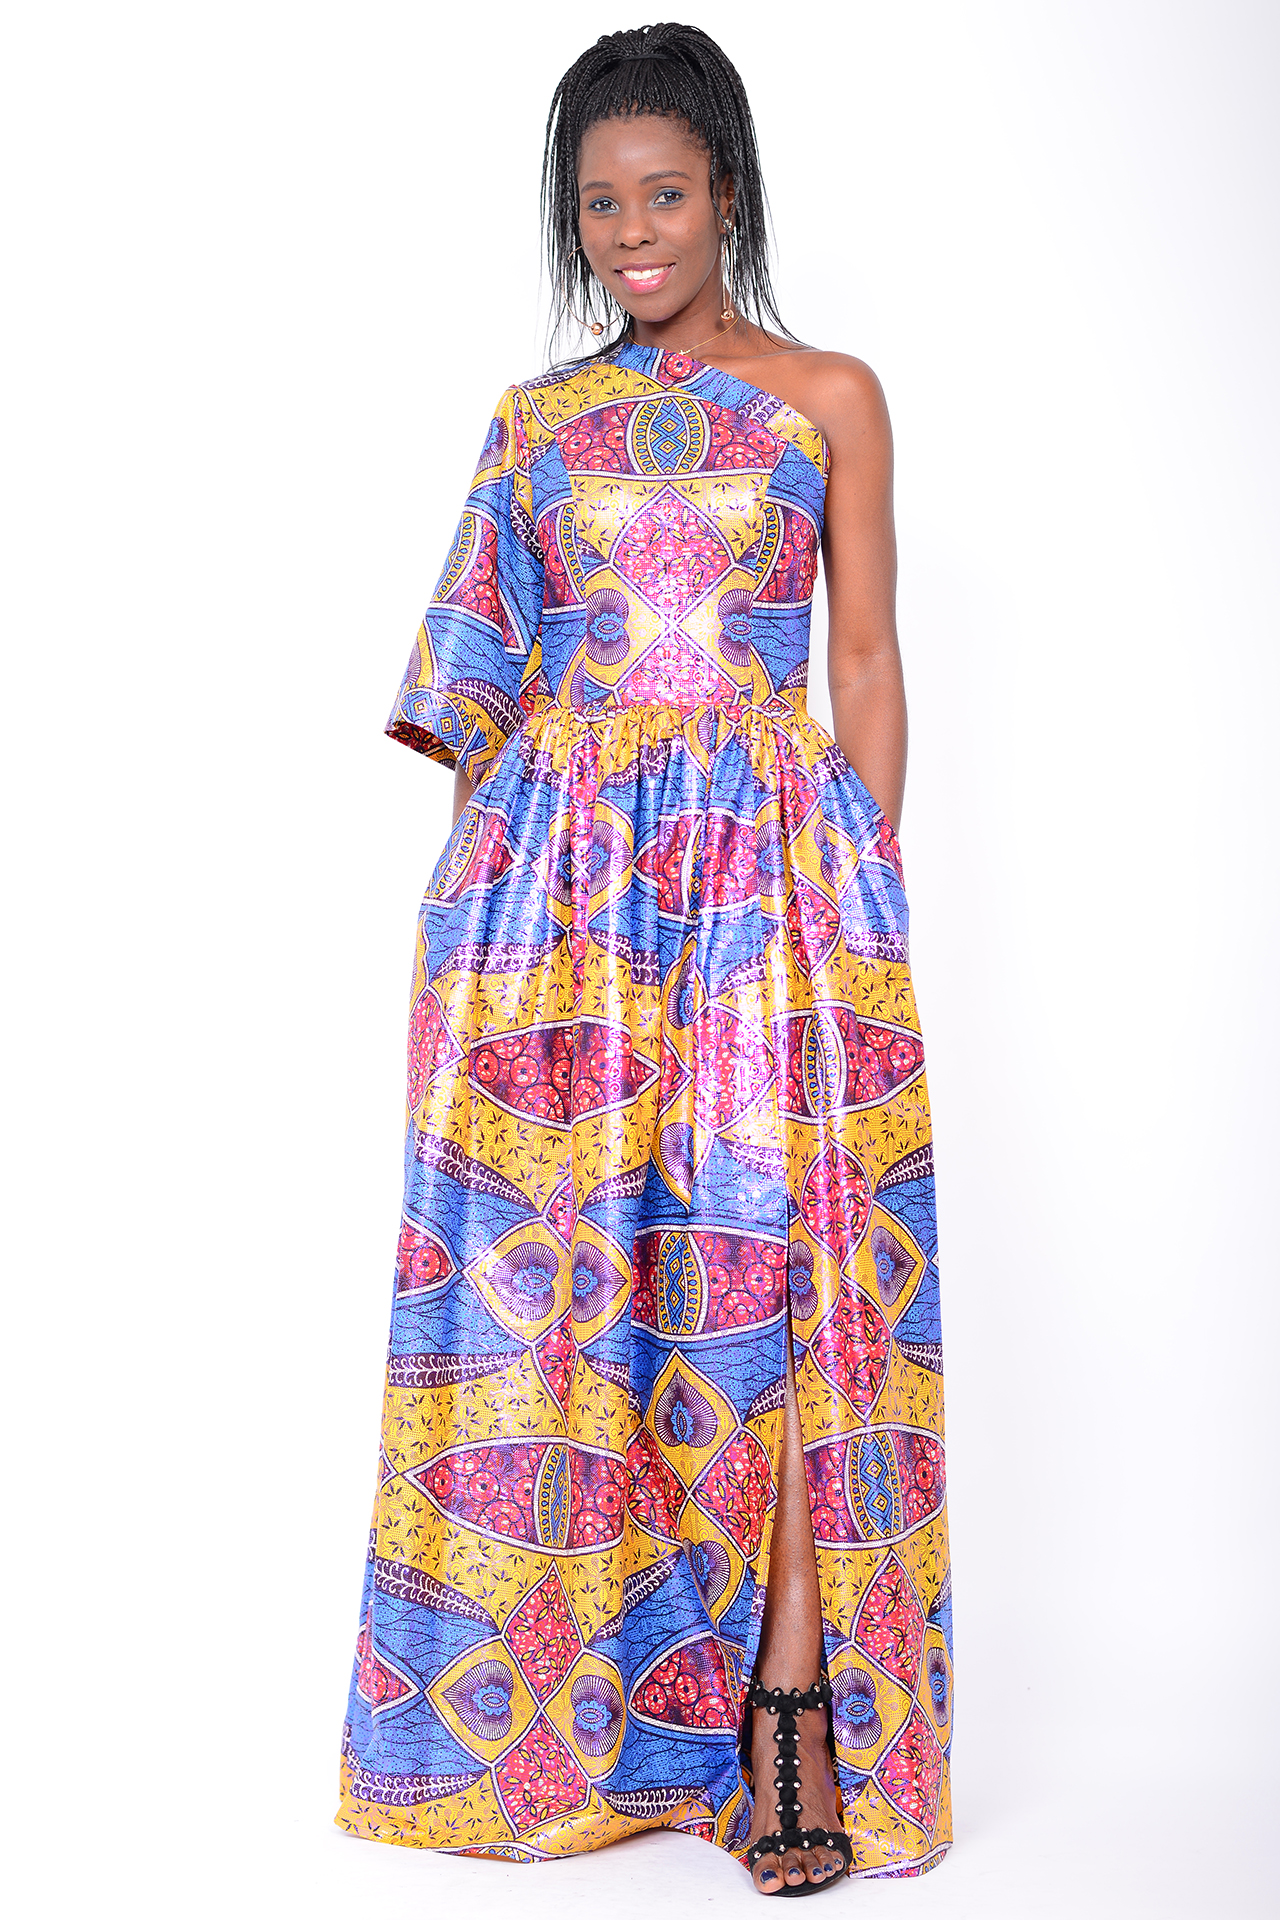 Afrikanische Mode - Euge-W Kollektion 2021 - Afrikanische Kleider Frohe Weihnachten